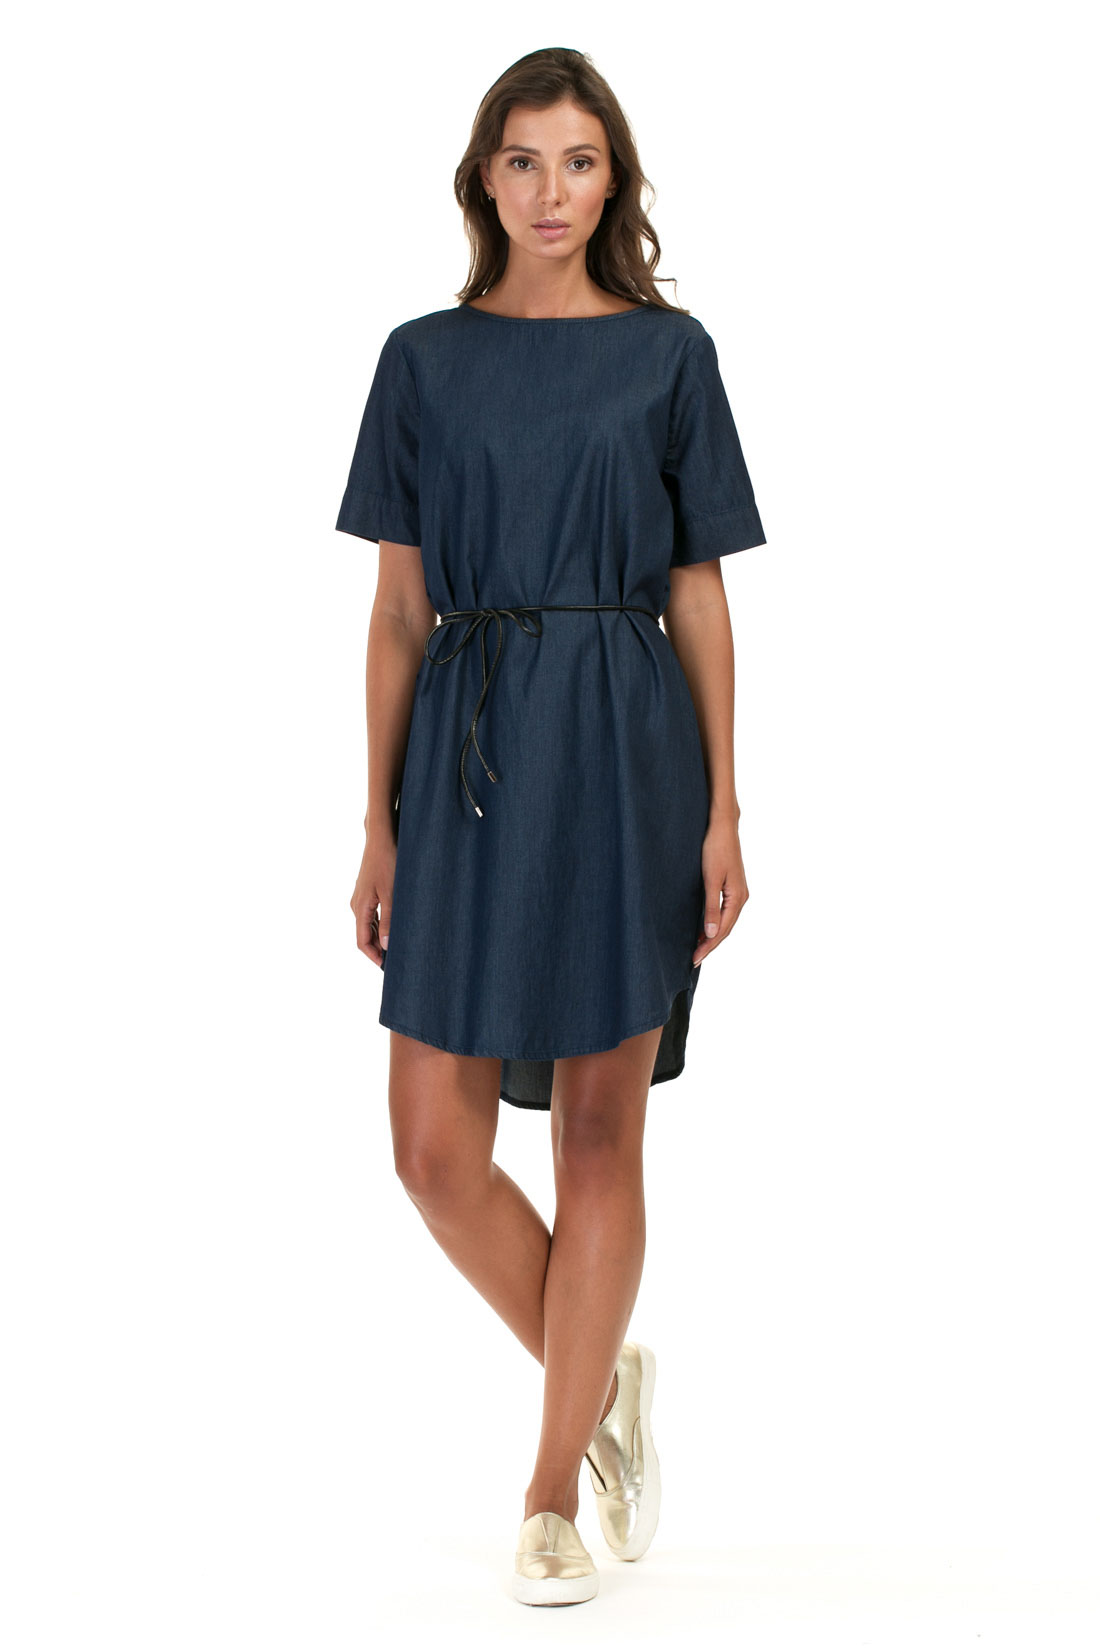 Платье из денима-шамбри (арт. baon B457027), размер XXL, цвет navy denim#синий Платье из денима-шамбри (арт. baon B457027) - фото 1